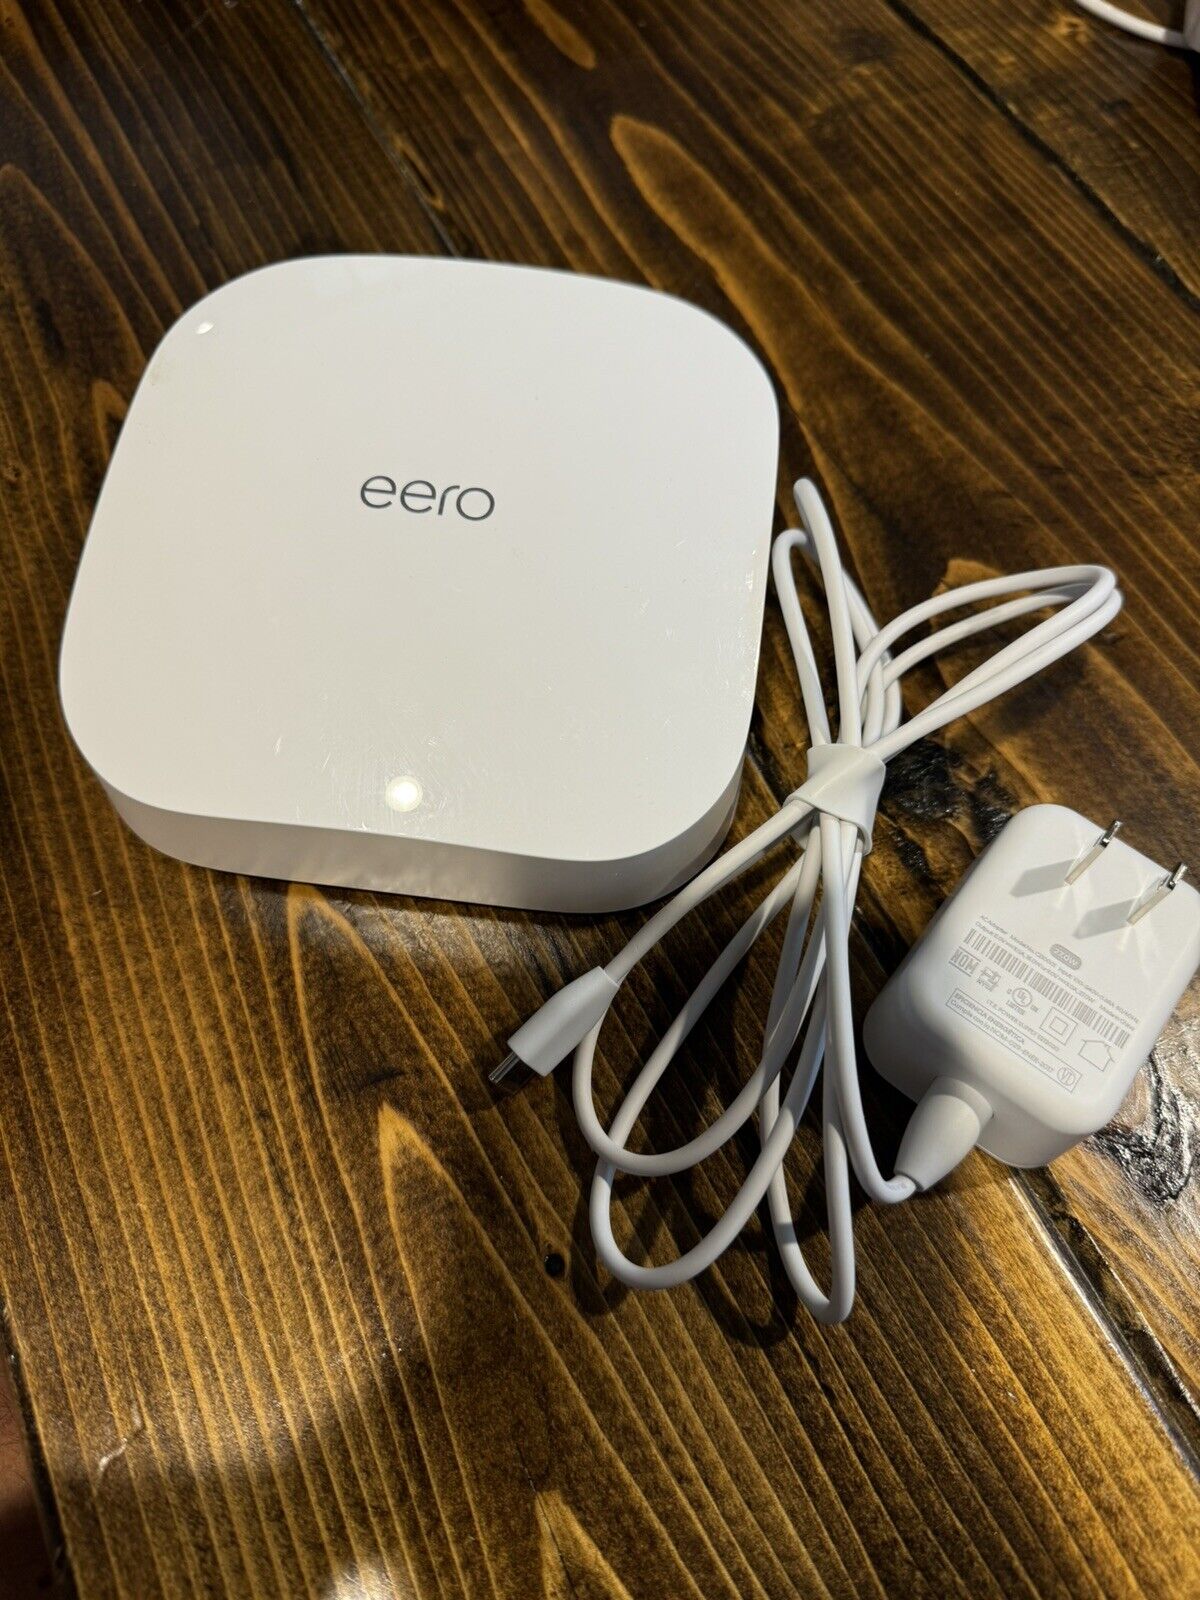 eero Pro 6 Mesh Wi-Fi System - White (K010311)